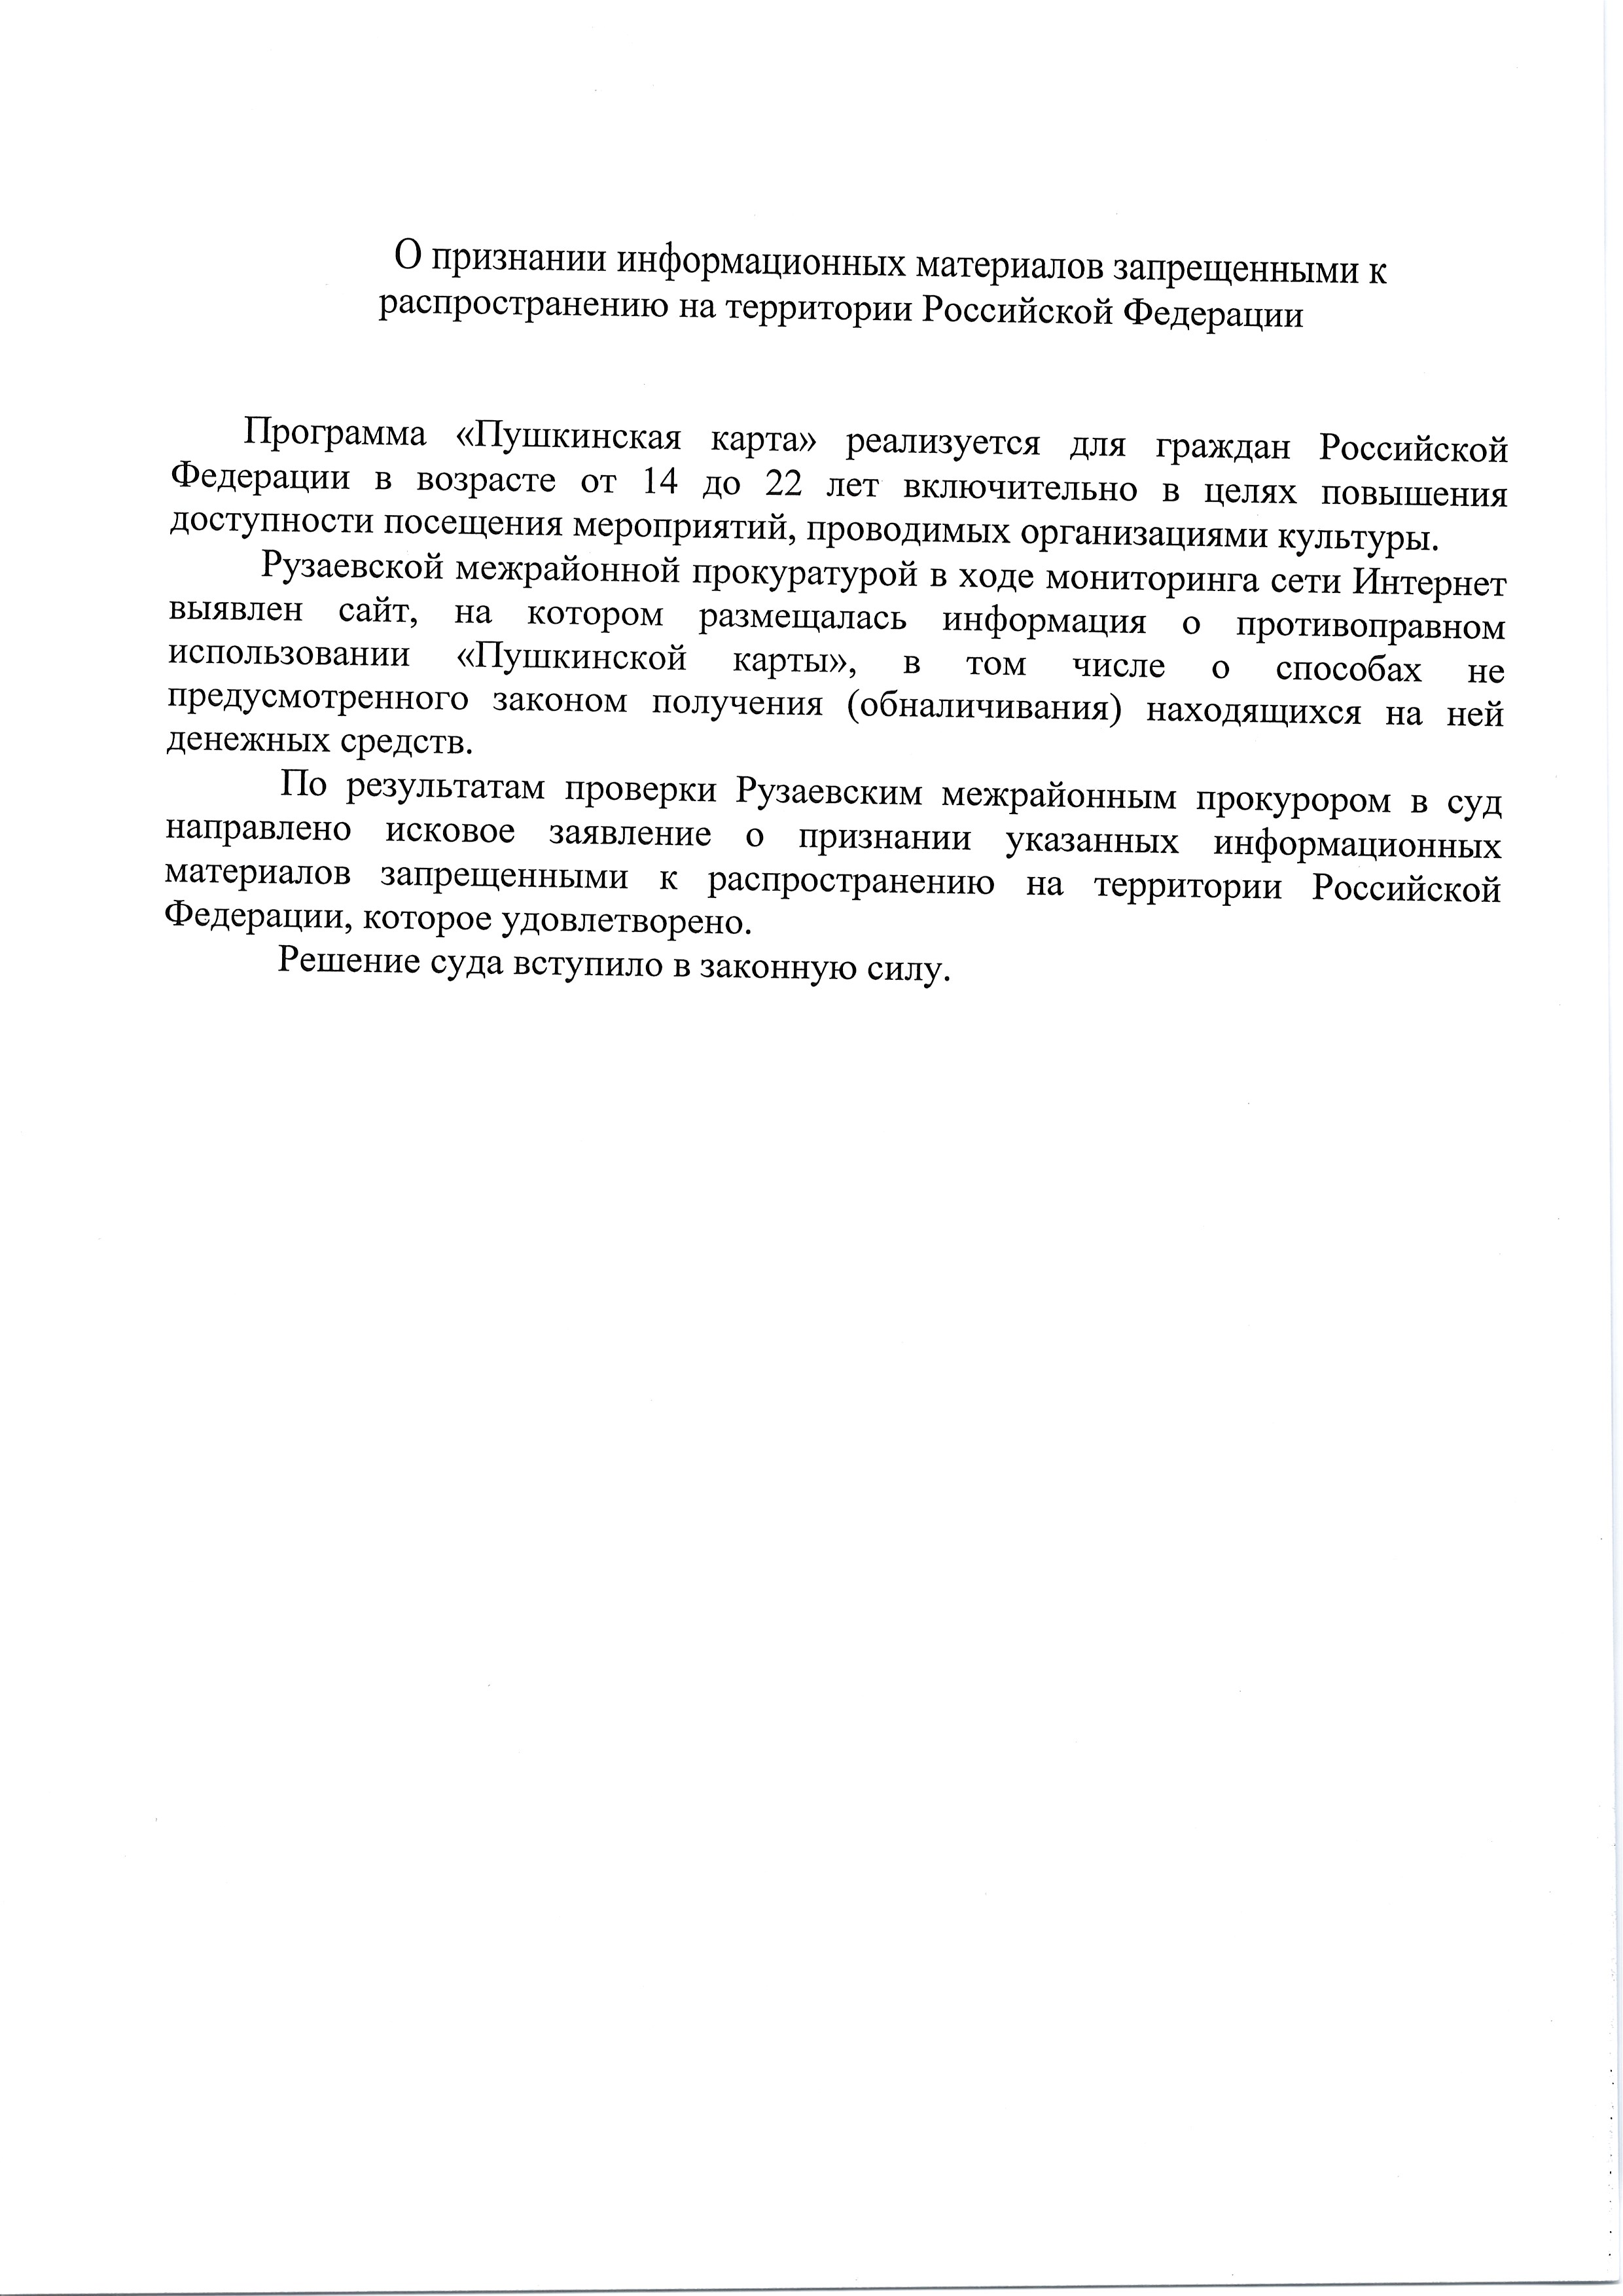 О признании информационных материалов запрещенными к распространению на территории Российской Федерации